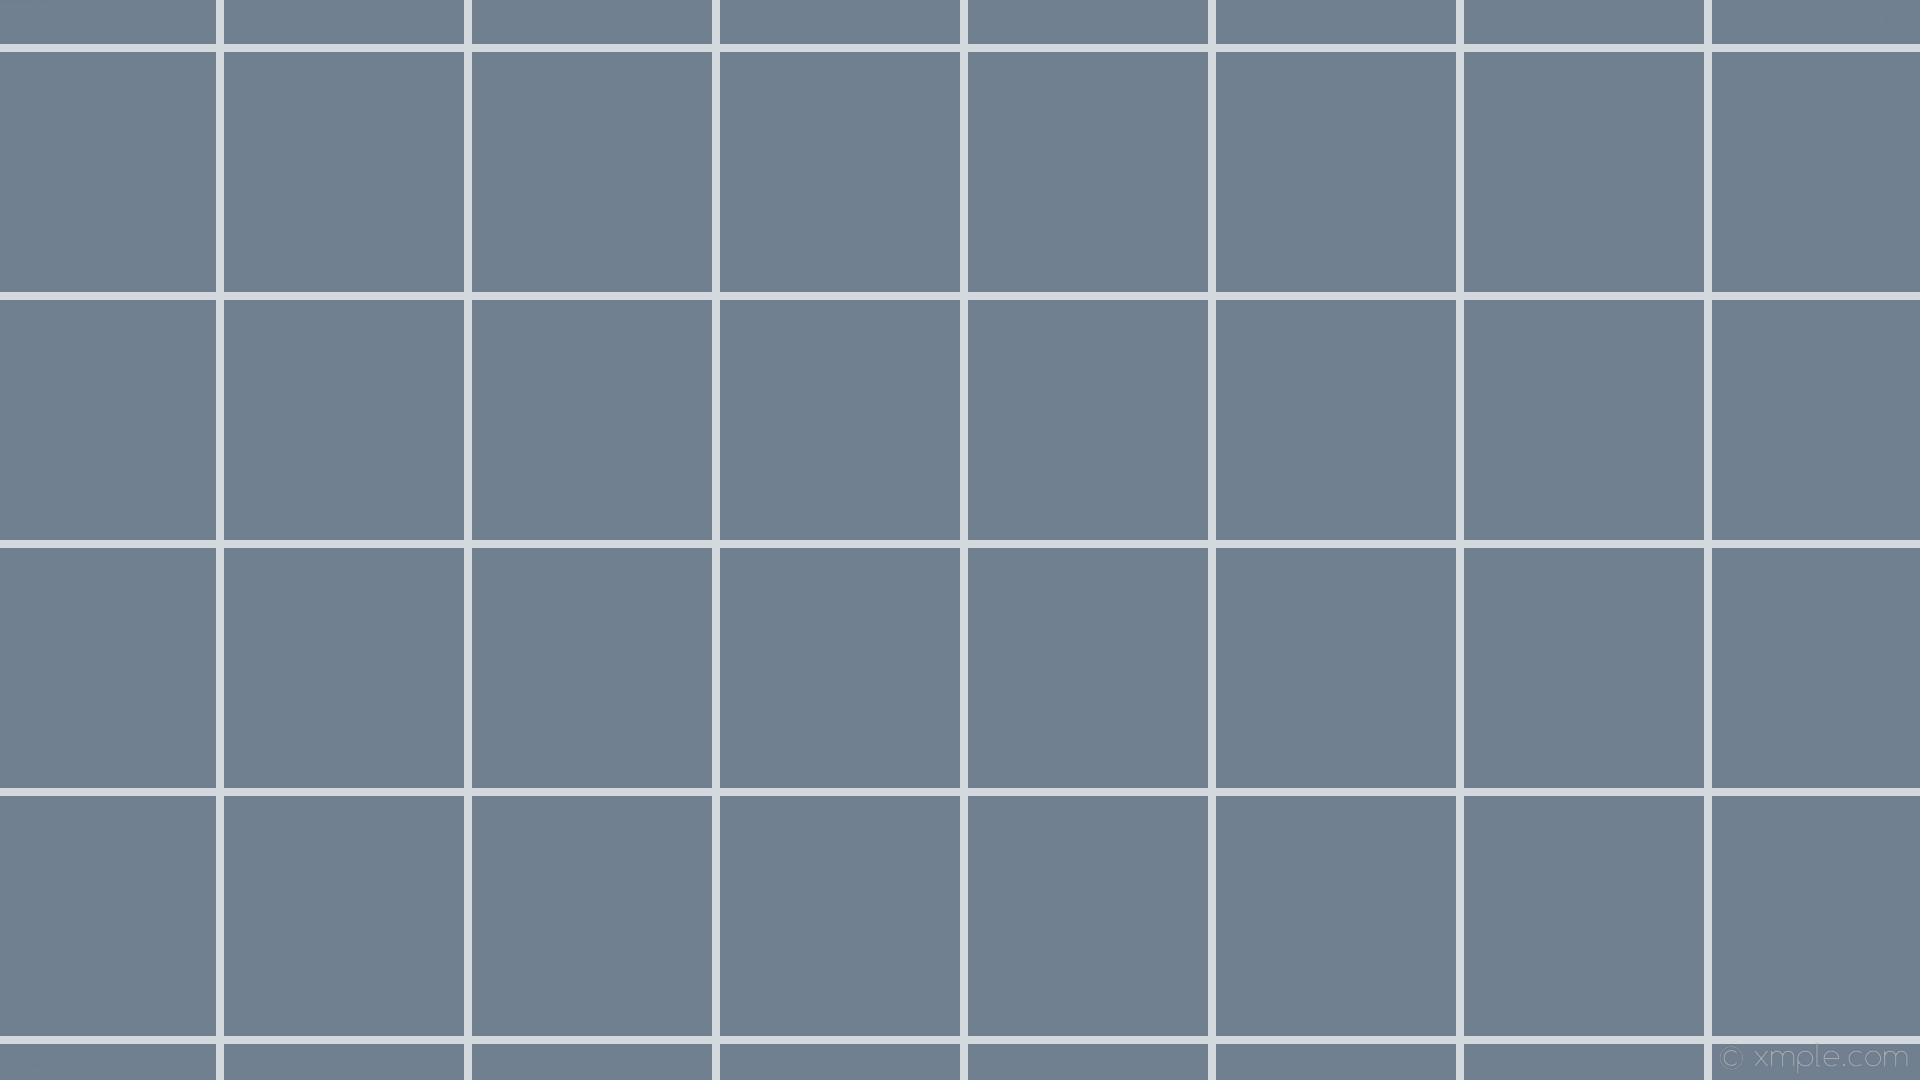 1920x1080 wallpaper grey graph paper white grid slate gray #708090 #ffffff 0Â° 8px  248px